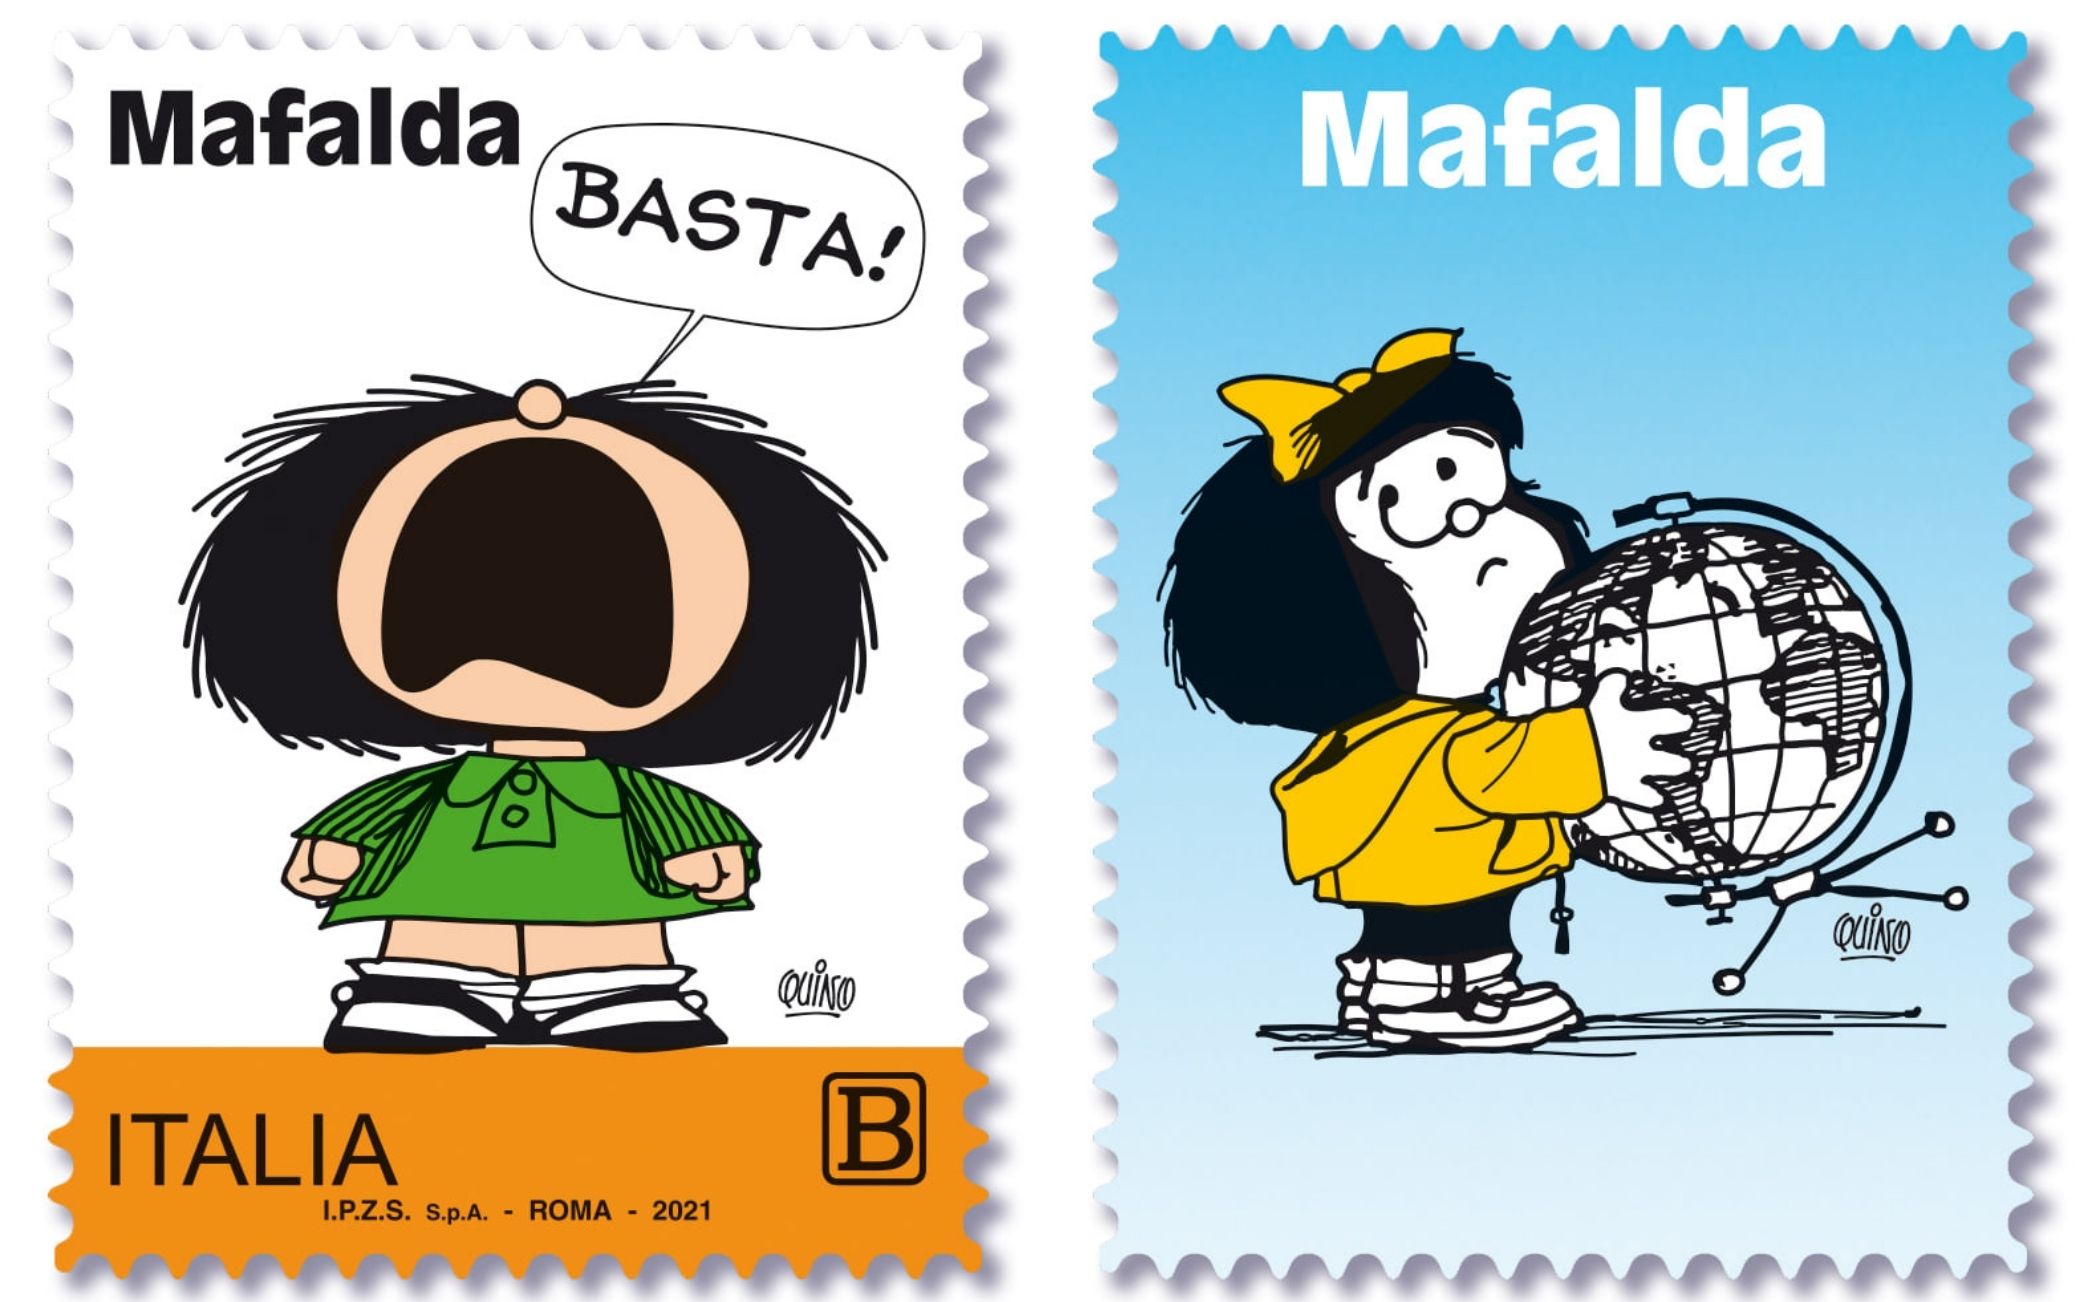 El sello postal de Mafalda de edición limitada 